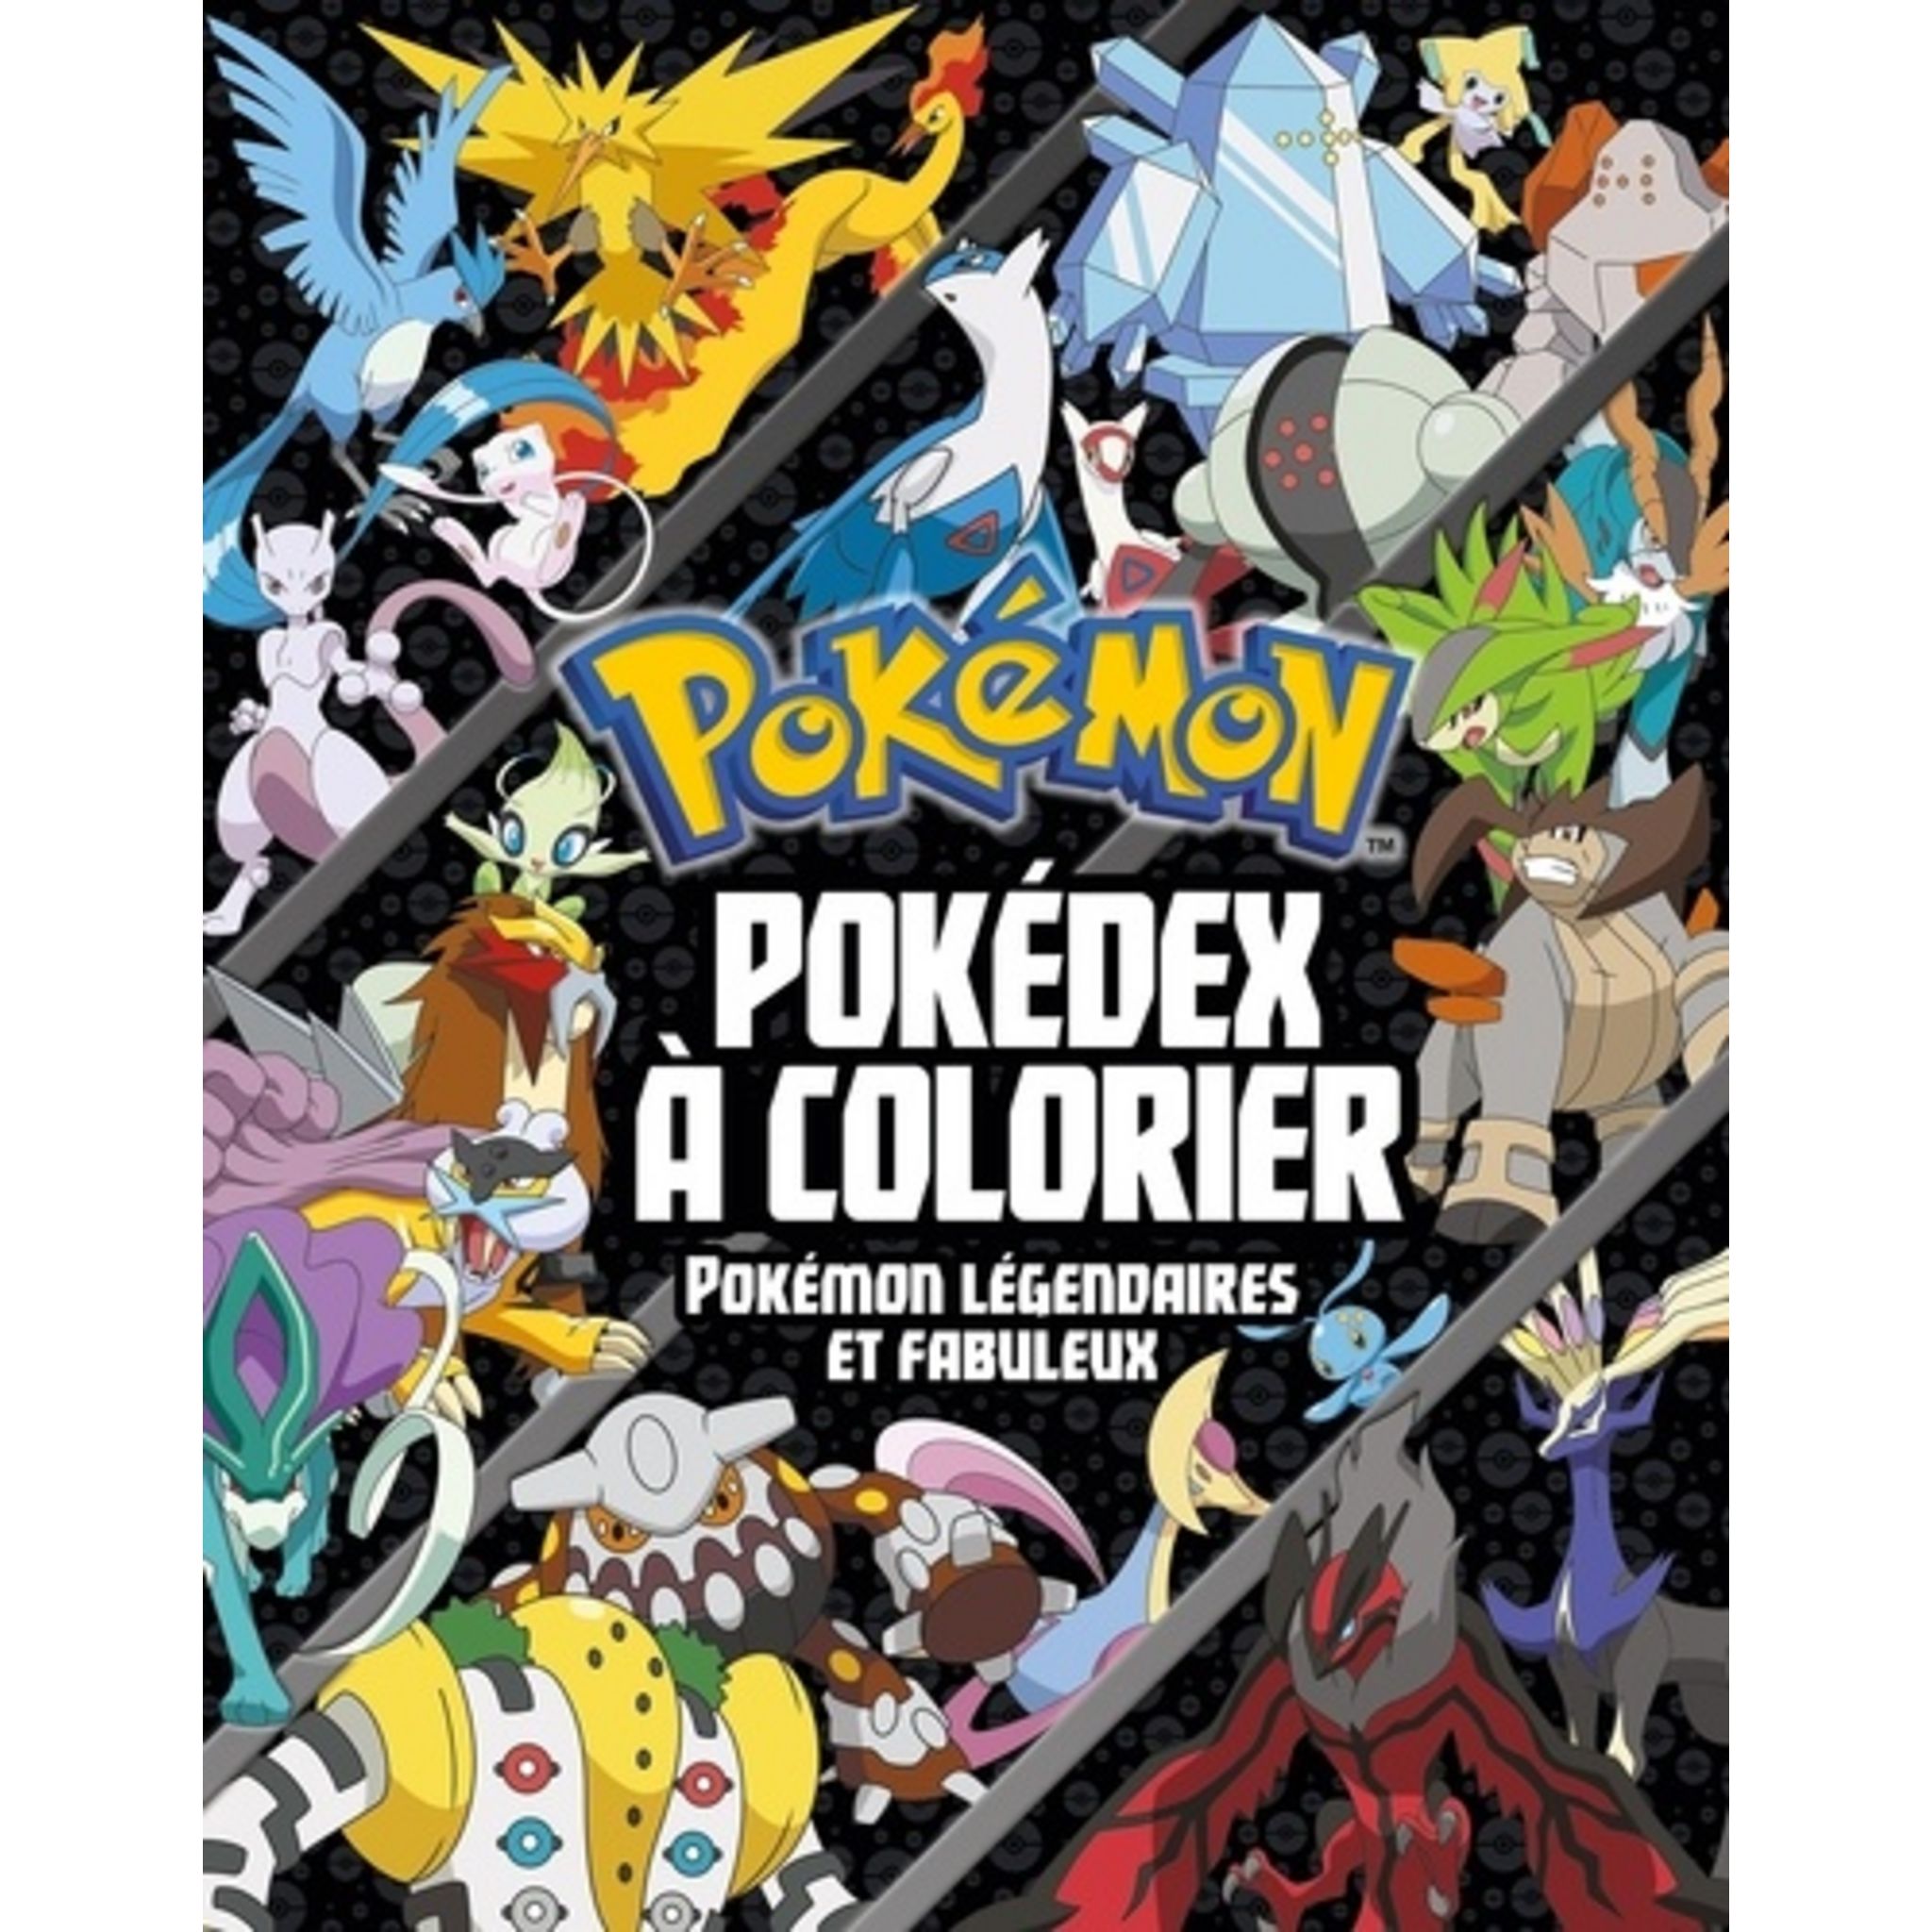 Coloriage Pokemon rare, Notre livre gratuit à colorier